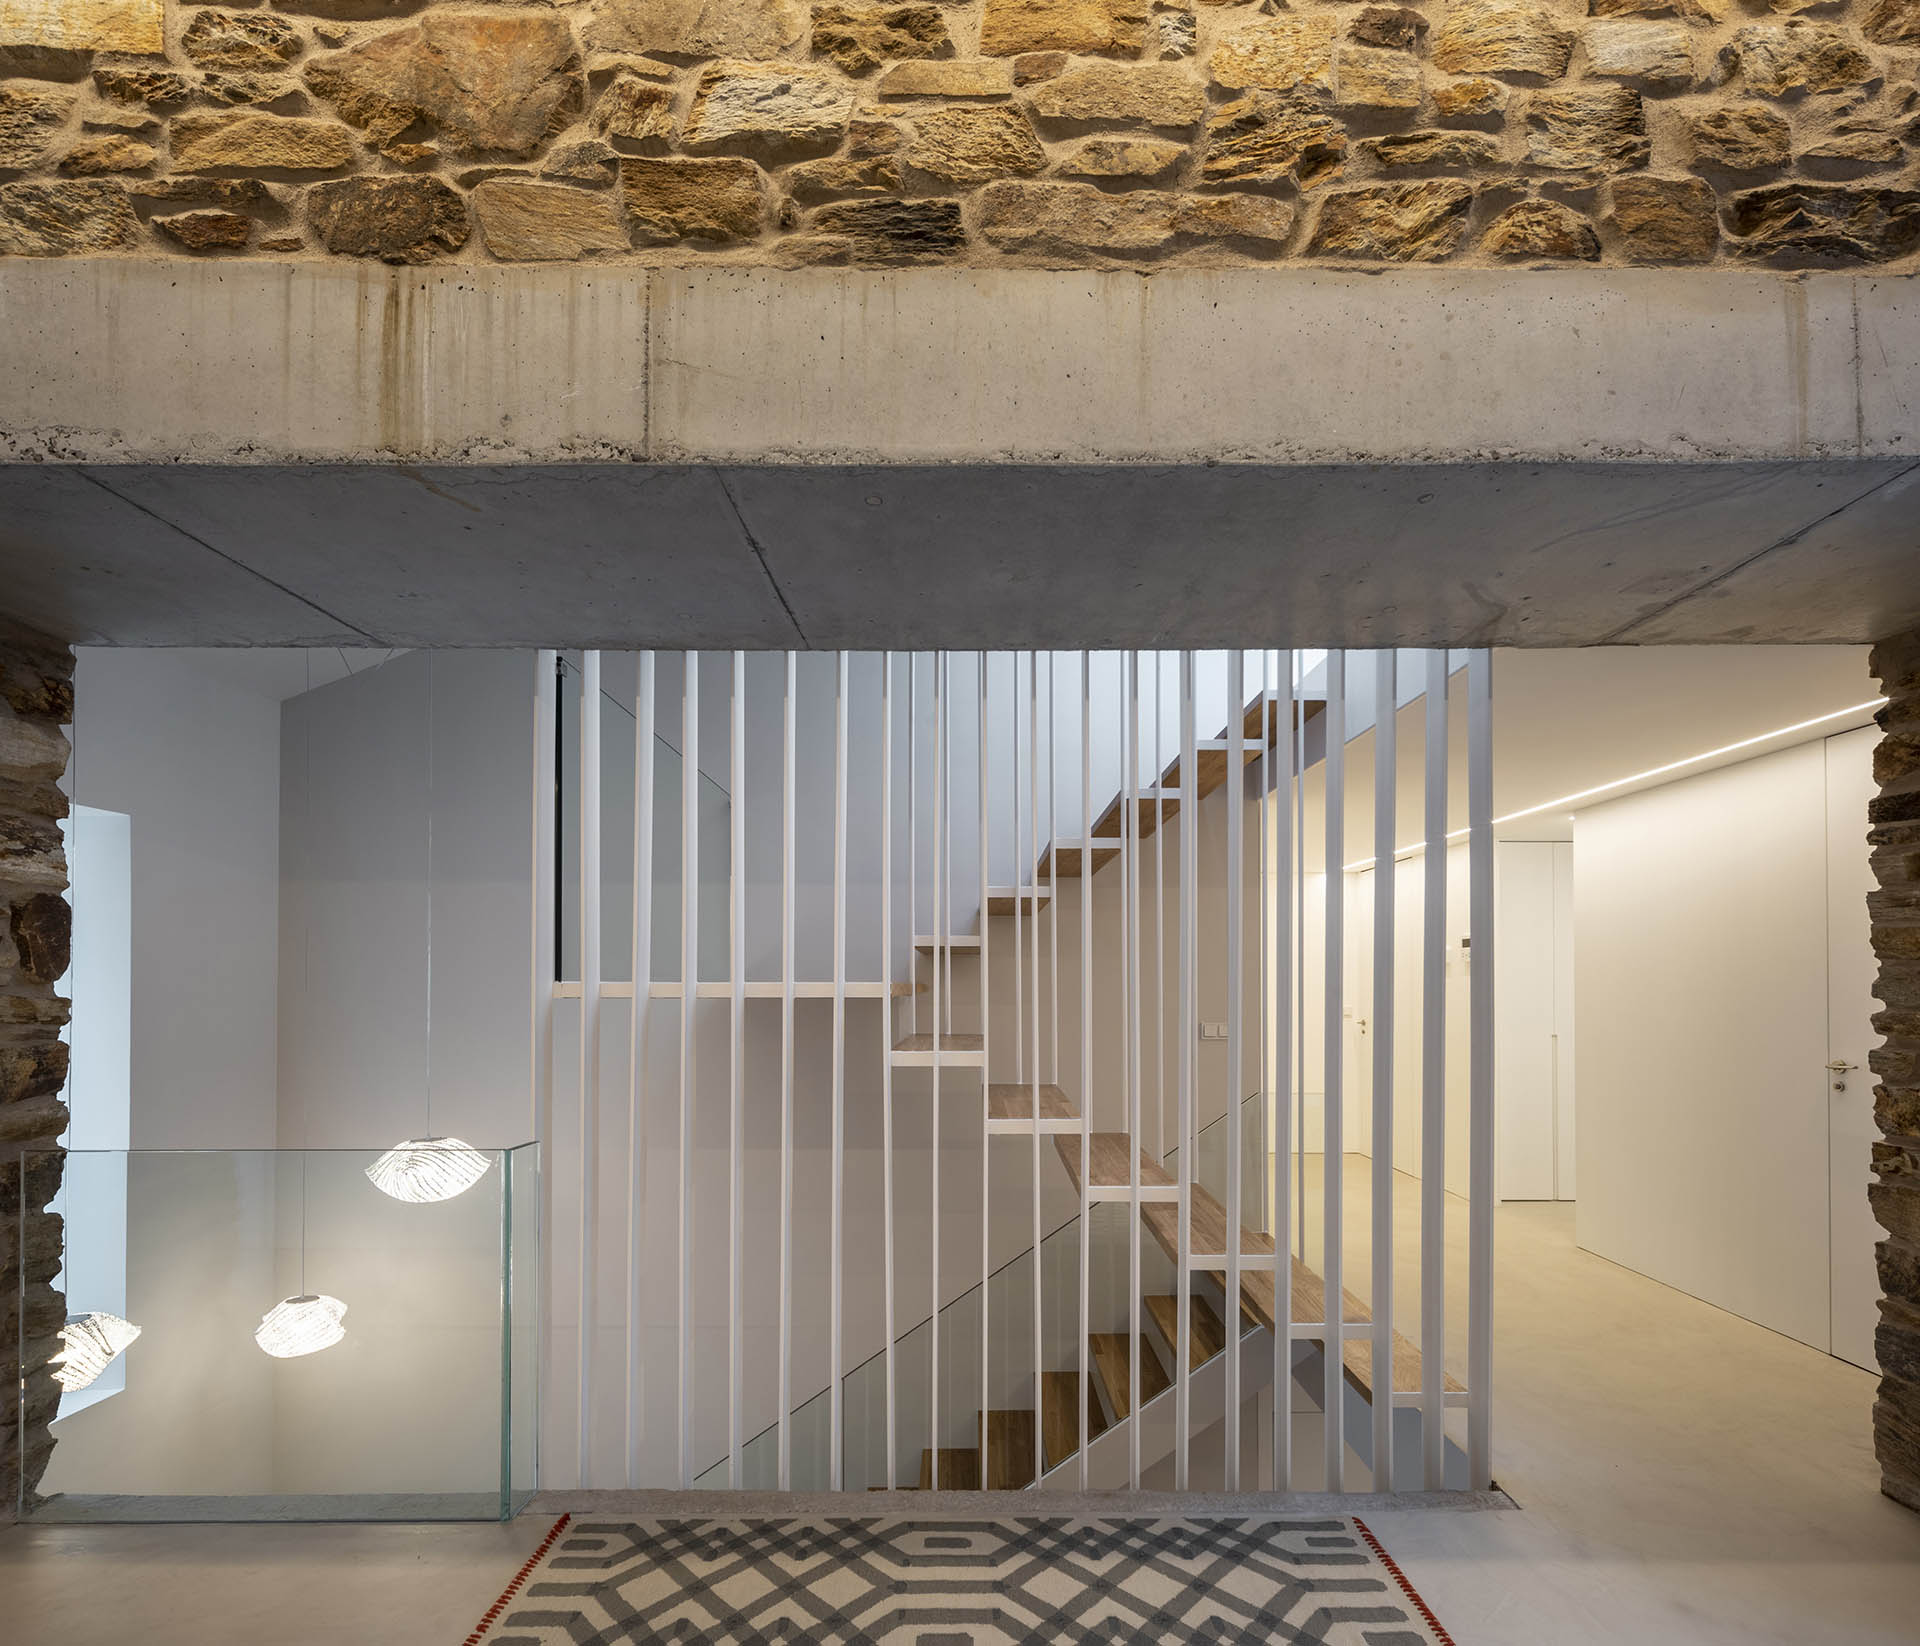 Reforma vivienda, arquitectura interior, escaleras. Diseño Santos Santiago Interiores